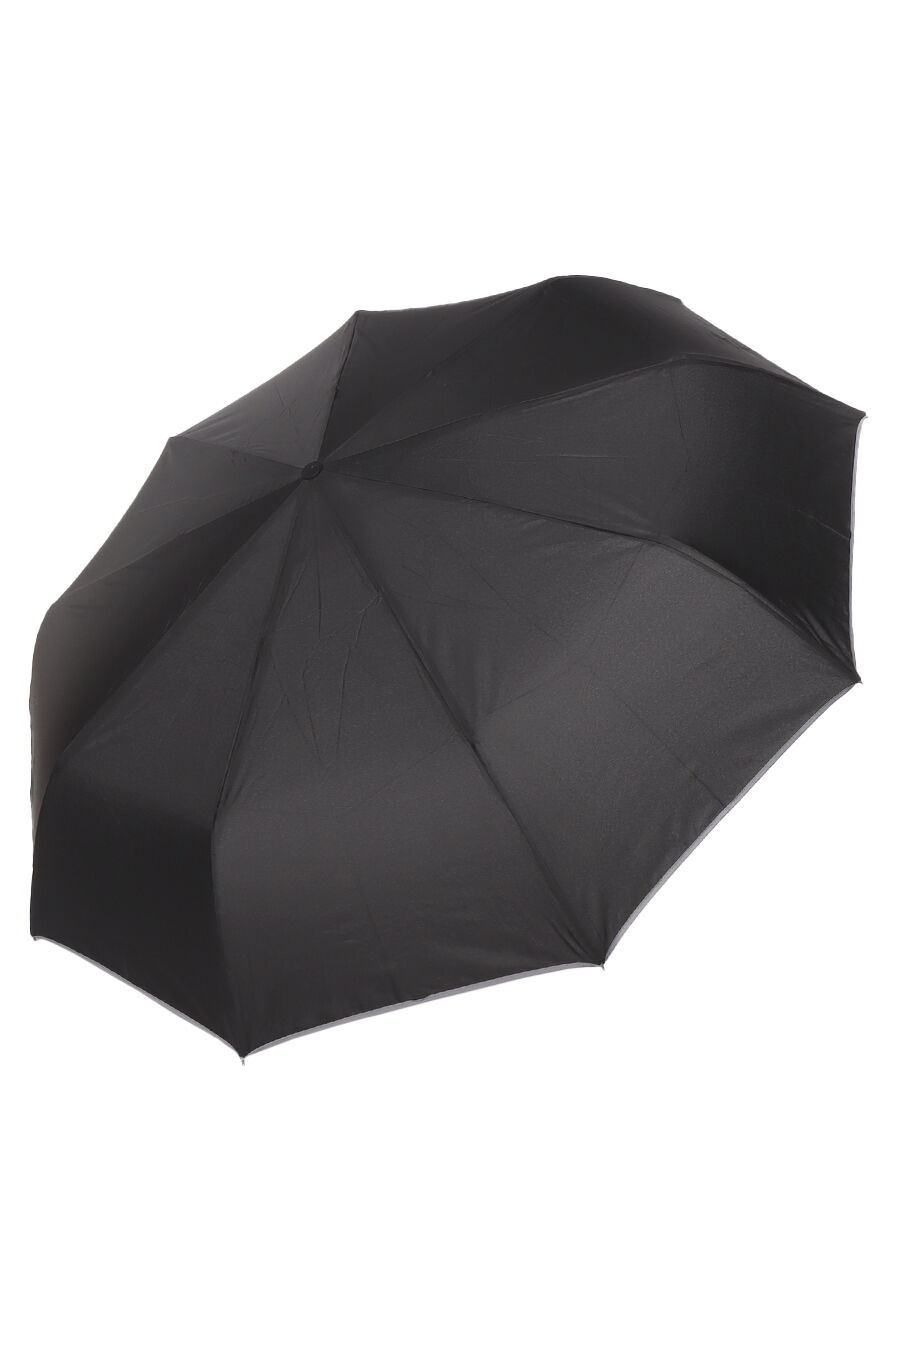 Зонт муж. Universal B3012 полный автомат (черный)